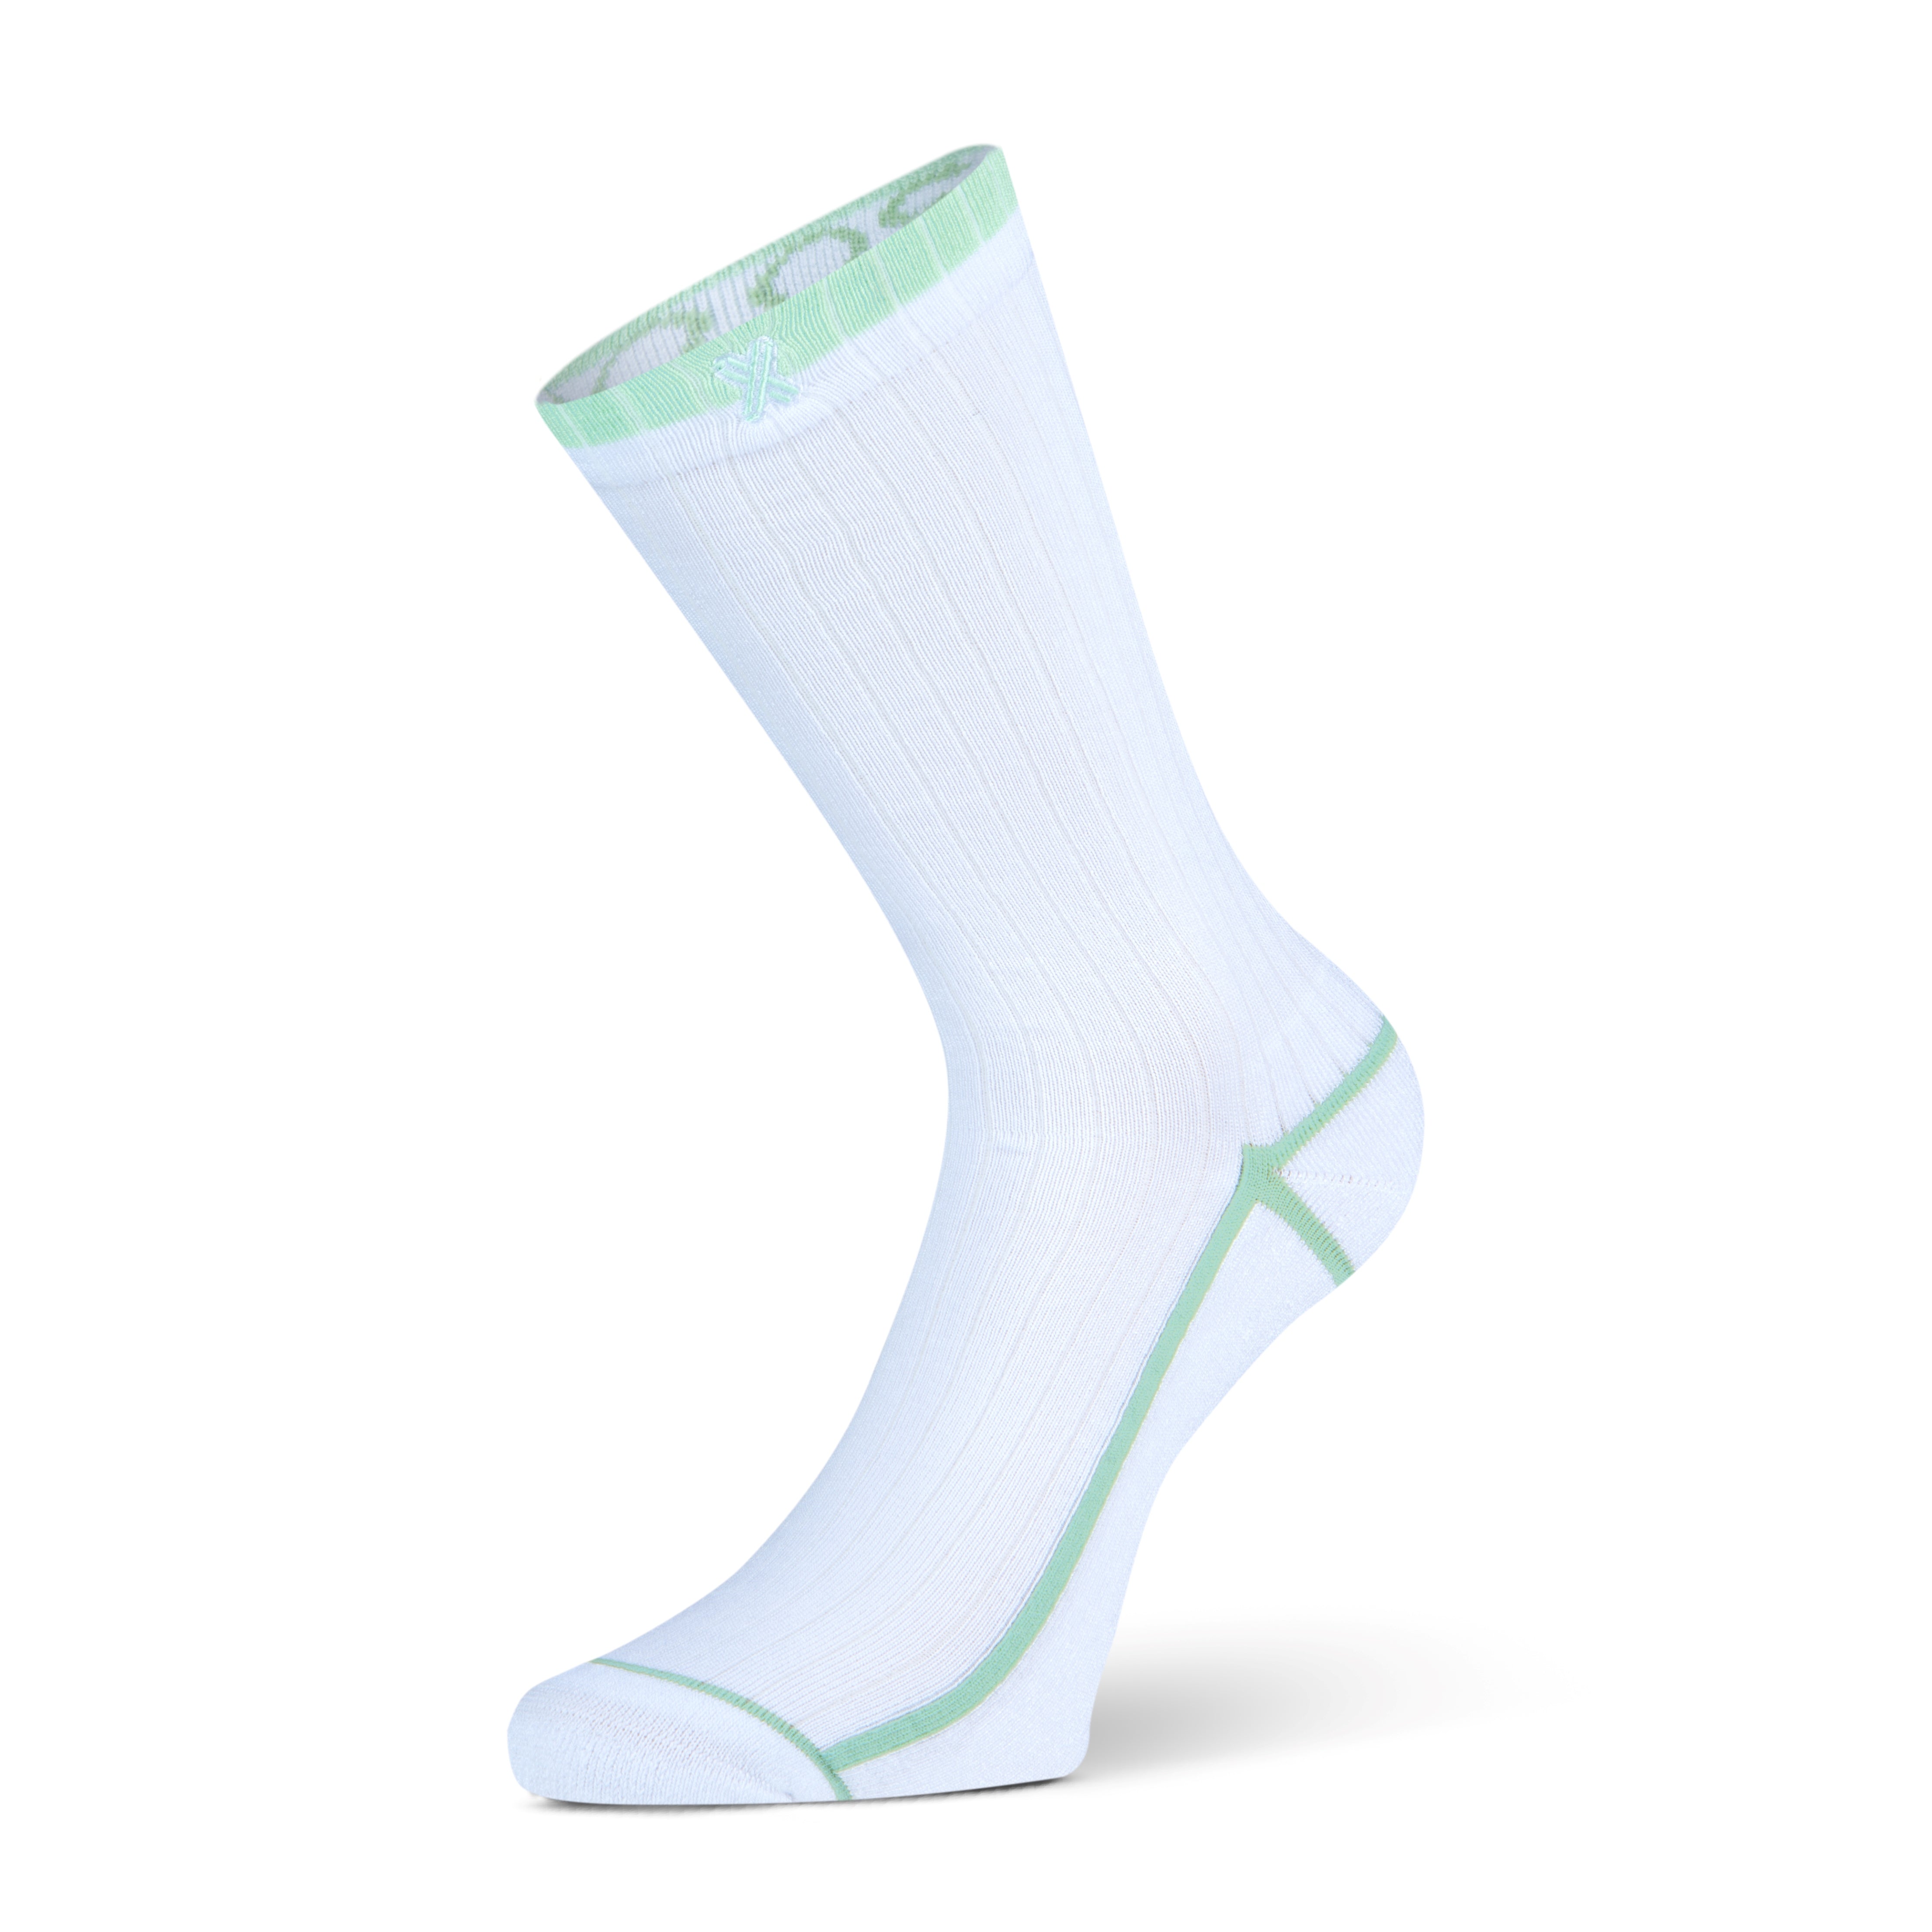 Tokyo women's socks White